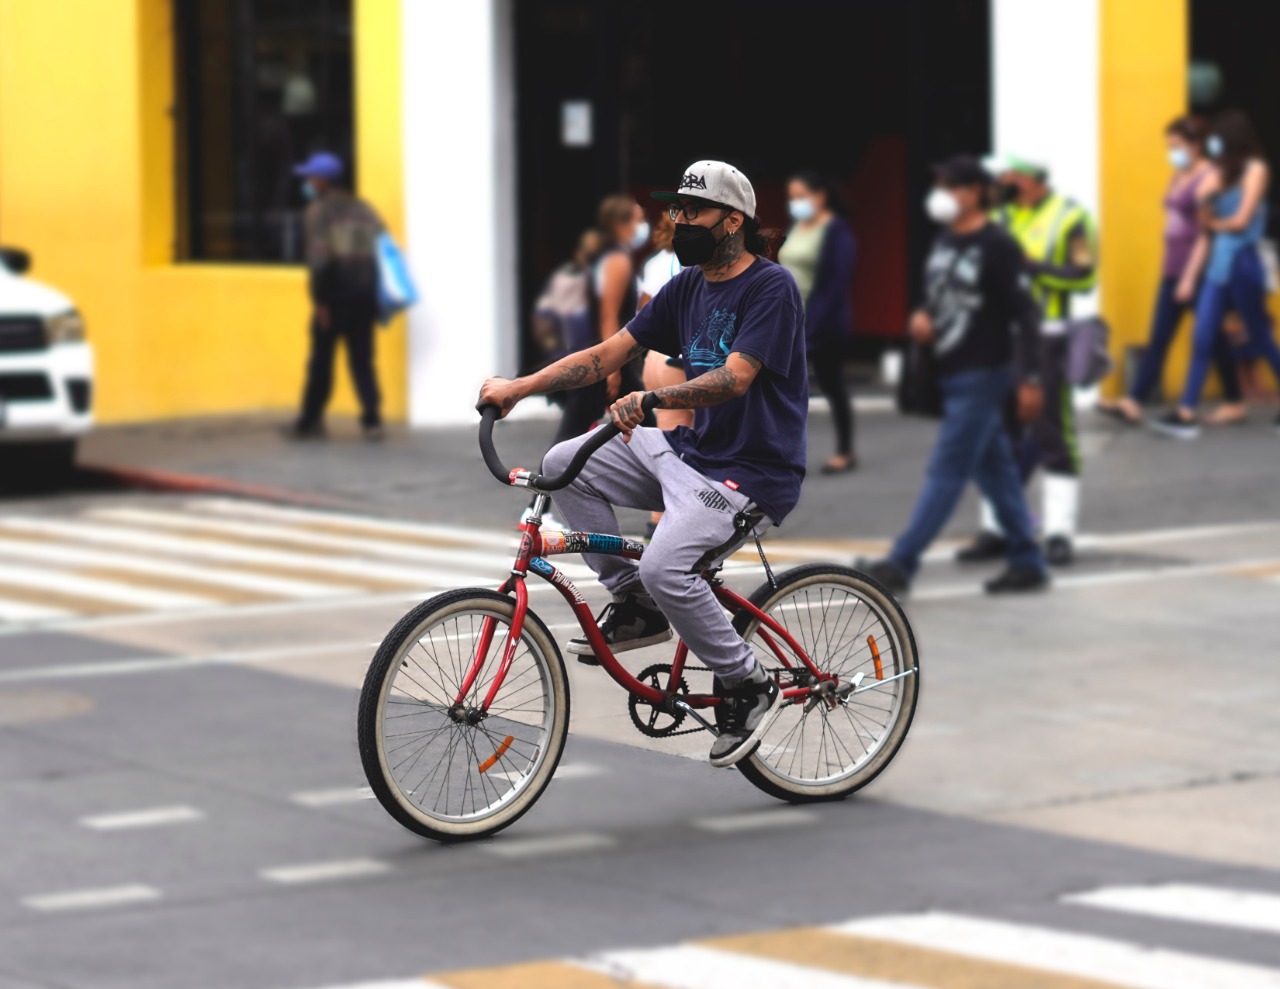 Celebra el Día Mundial de la Bicicleta con estas bicis eléctricas